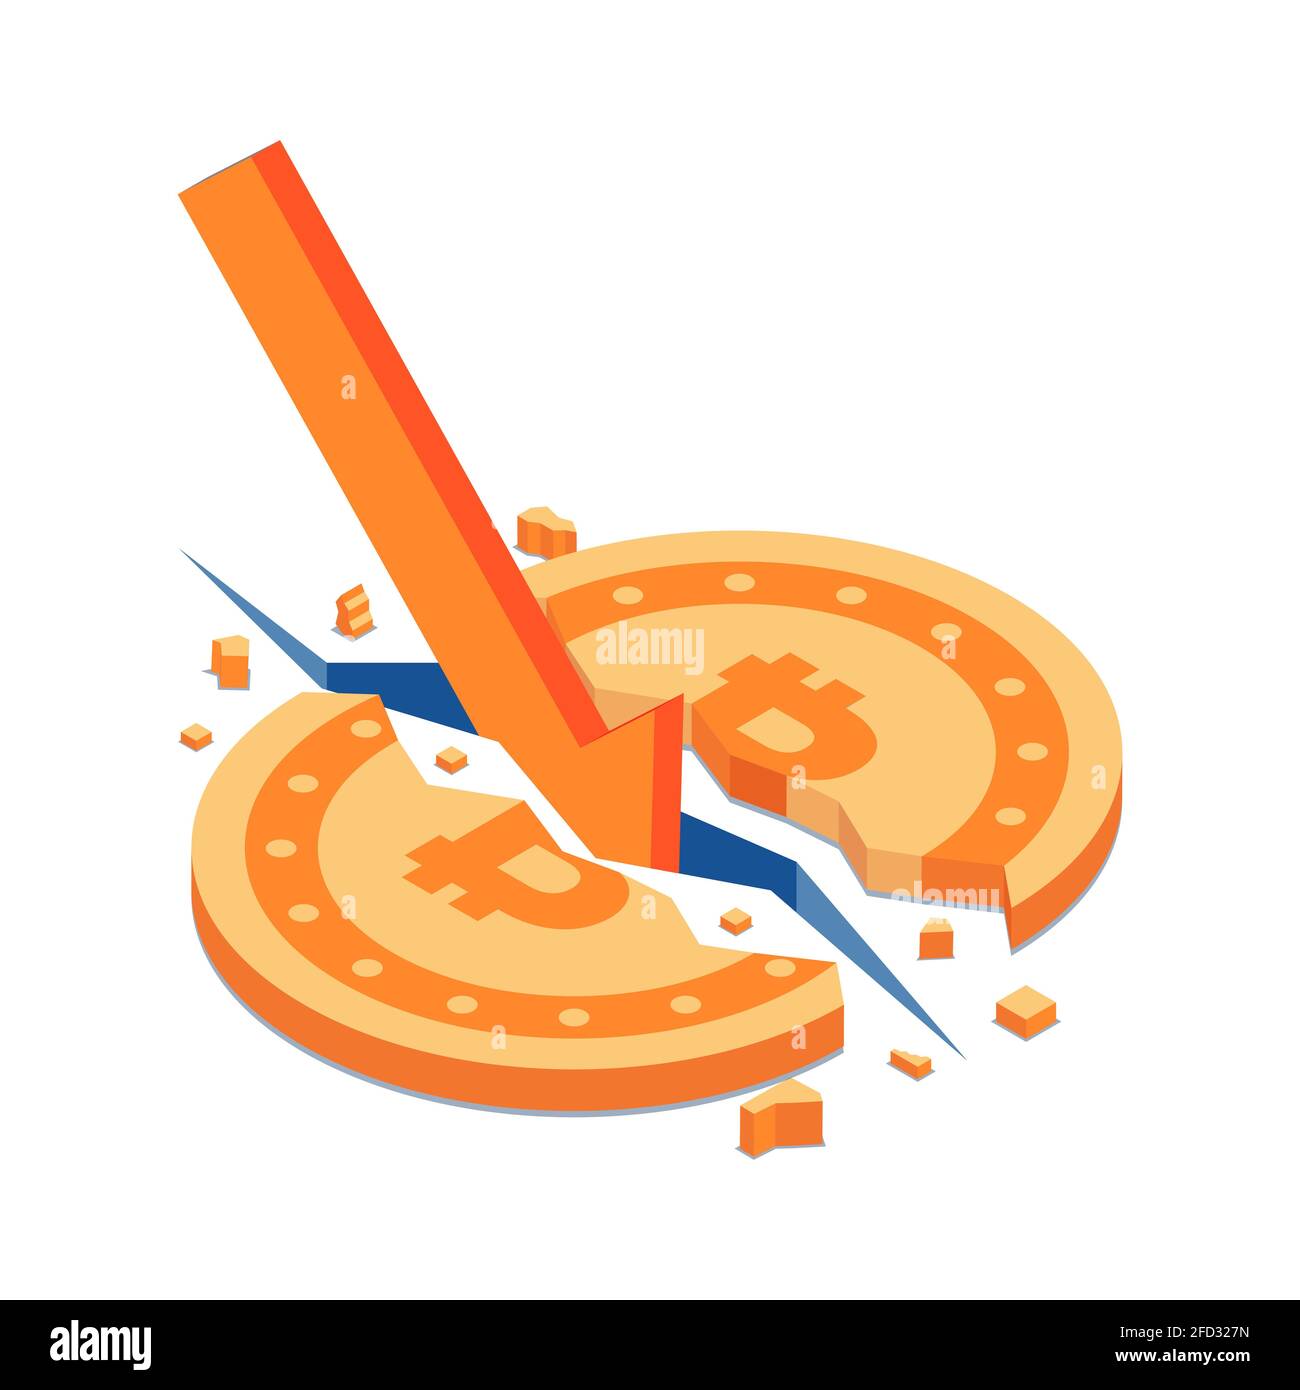 Flacher 3d-Isometrischer Bitcoin, der durch den roten fallenden Pfeil geknackt wurde. Bitcoin-Krise und Kryptowährungsblase-Konzept. Stock Vektor